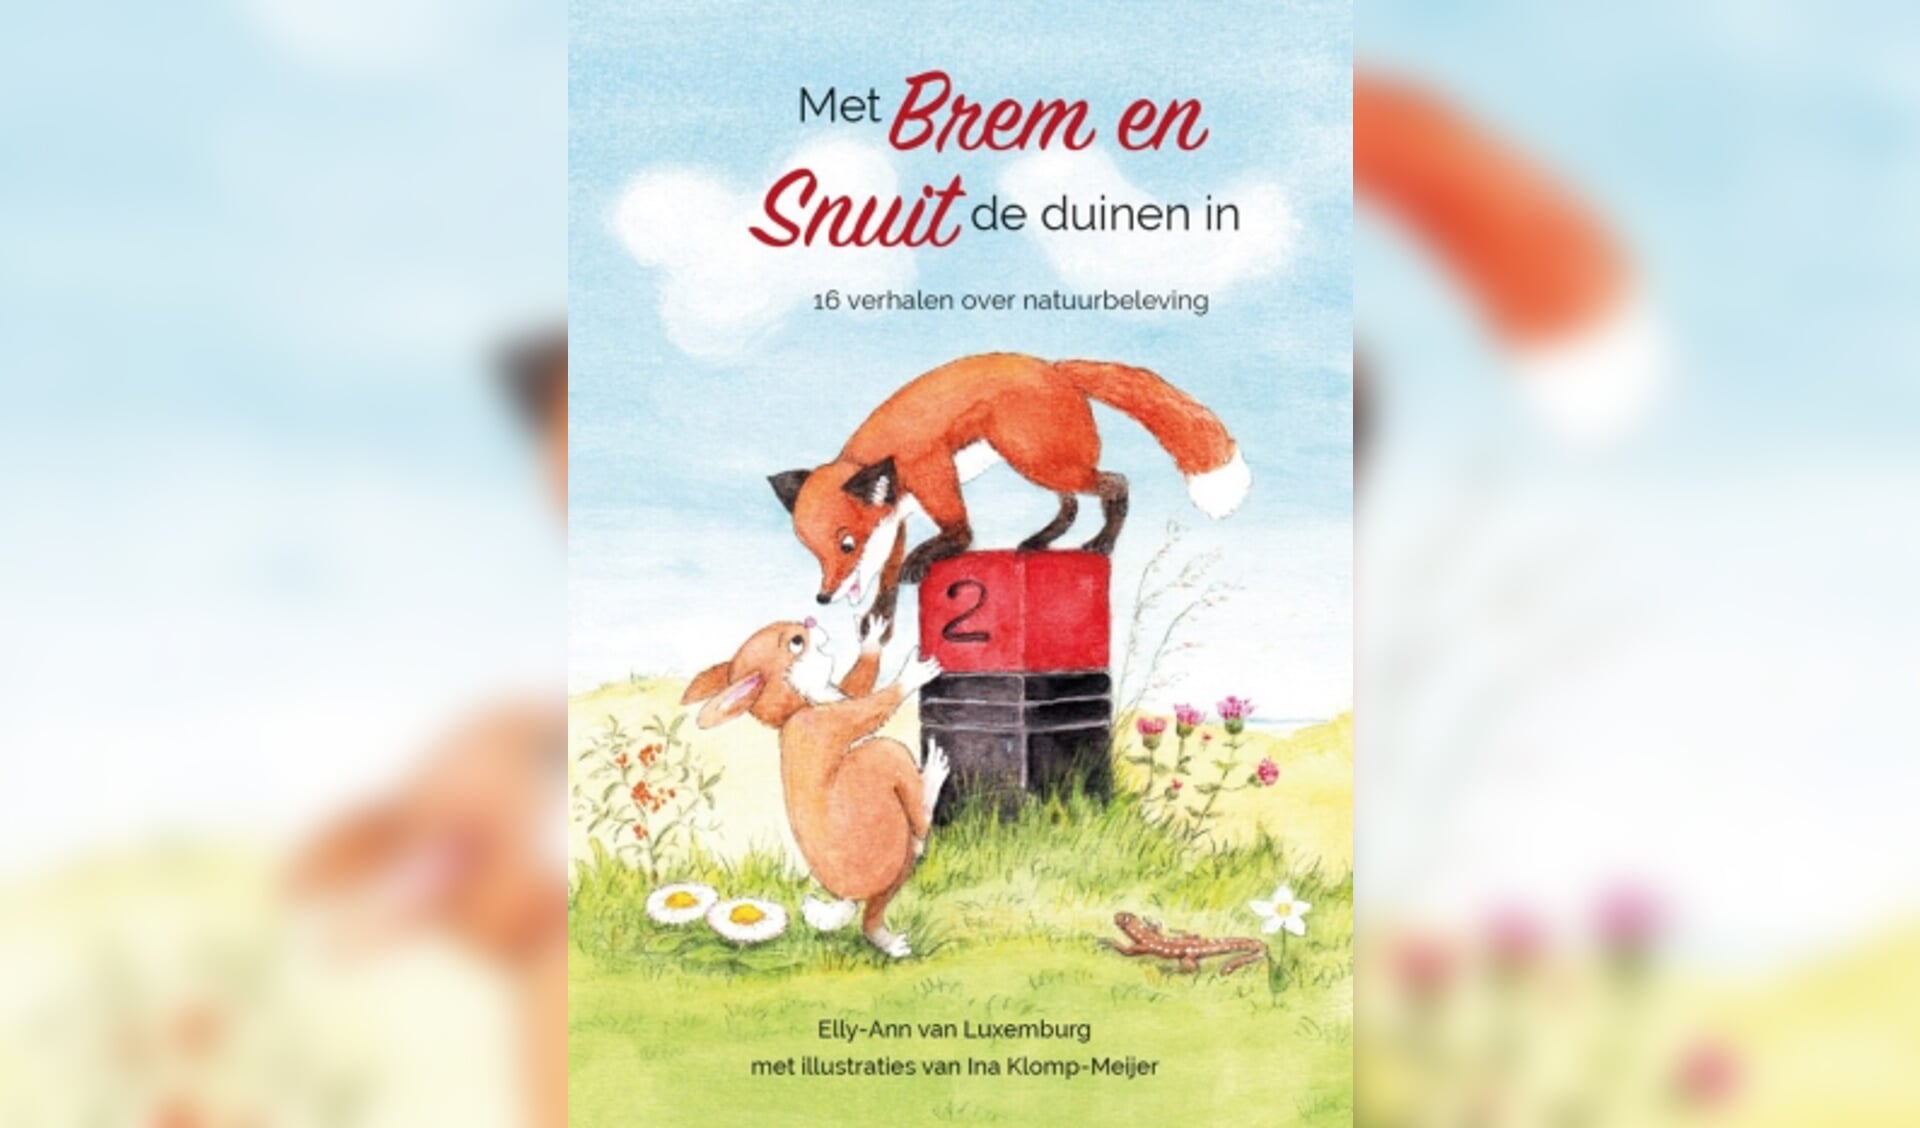 De cover van het boek: Met Brem en Snuit de duinen in.